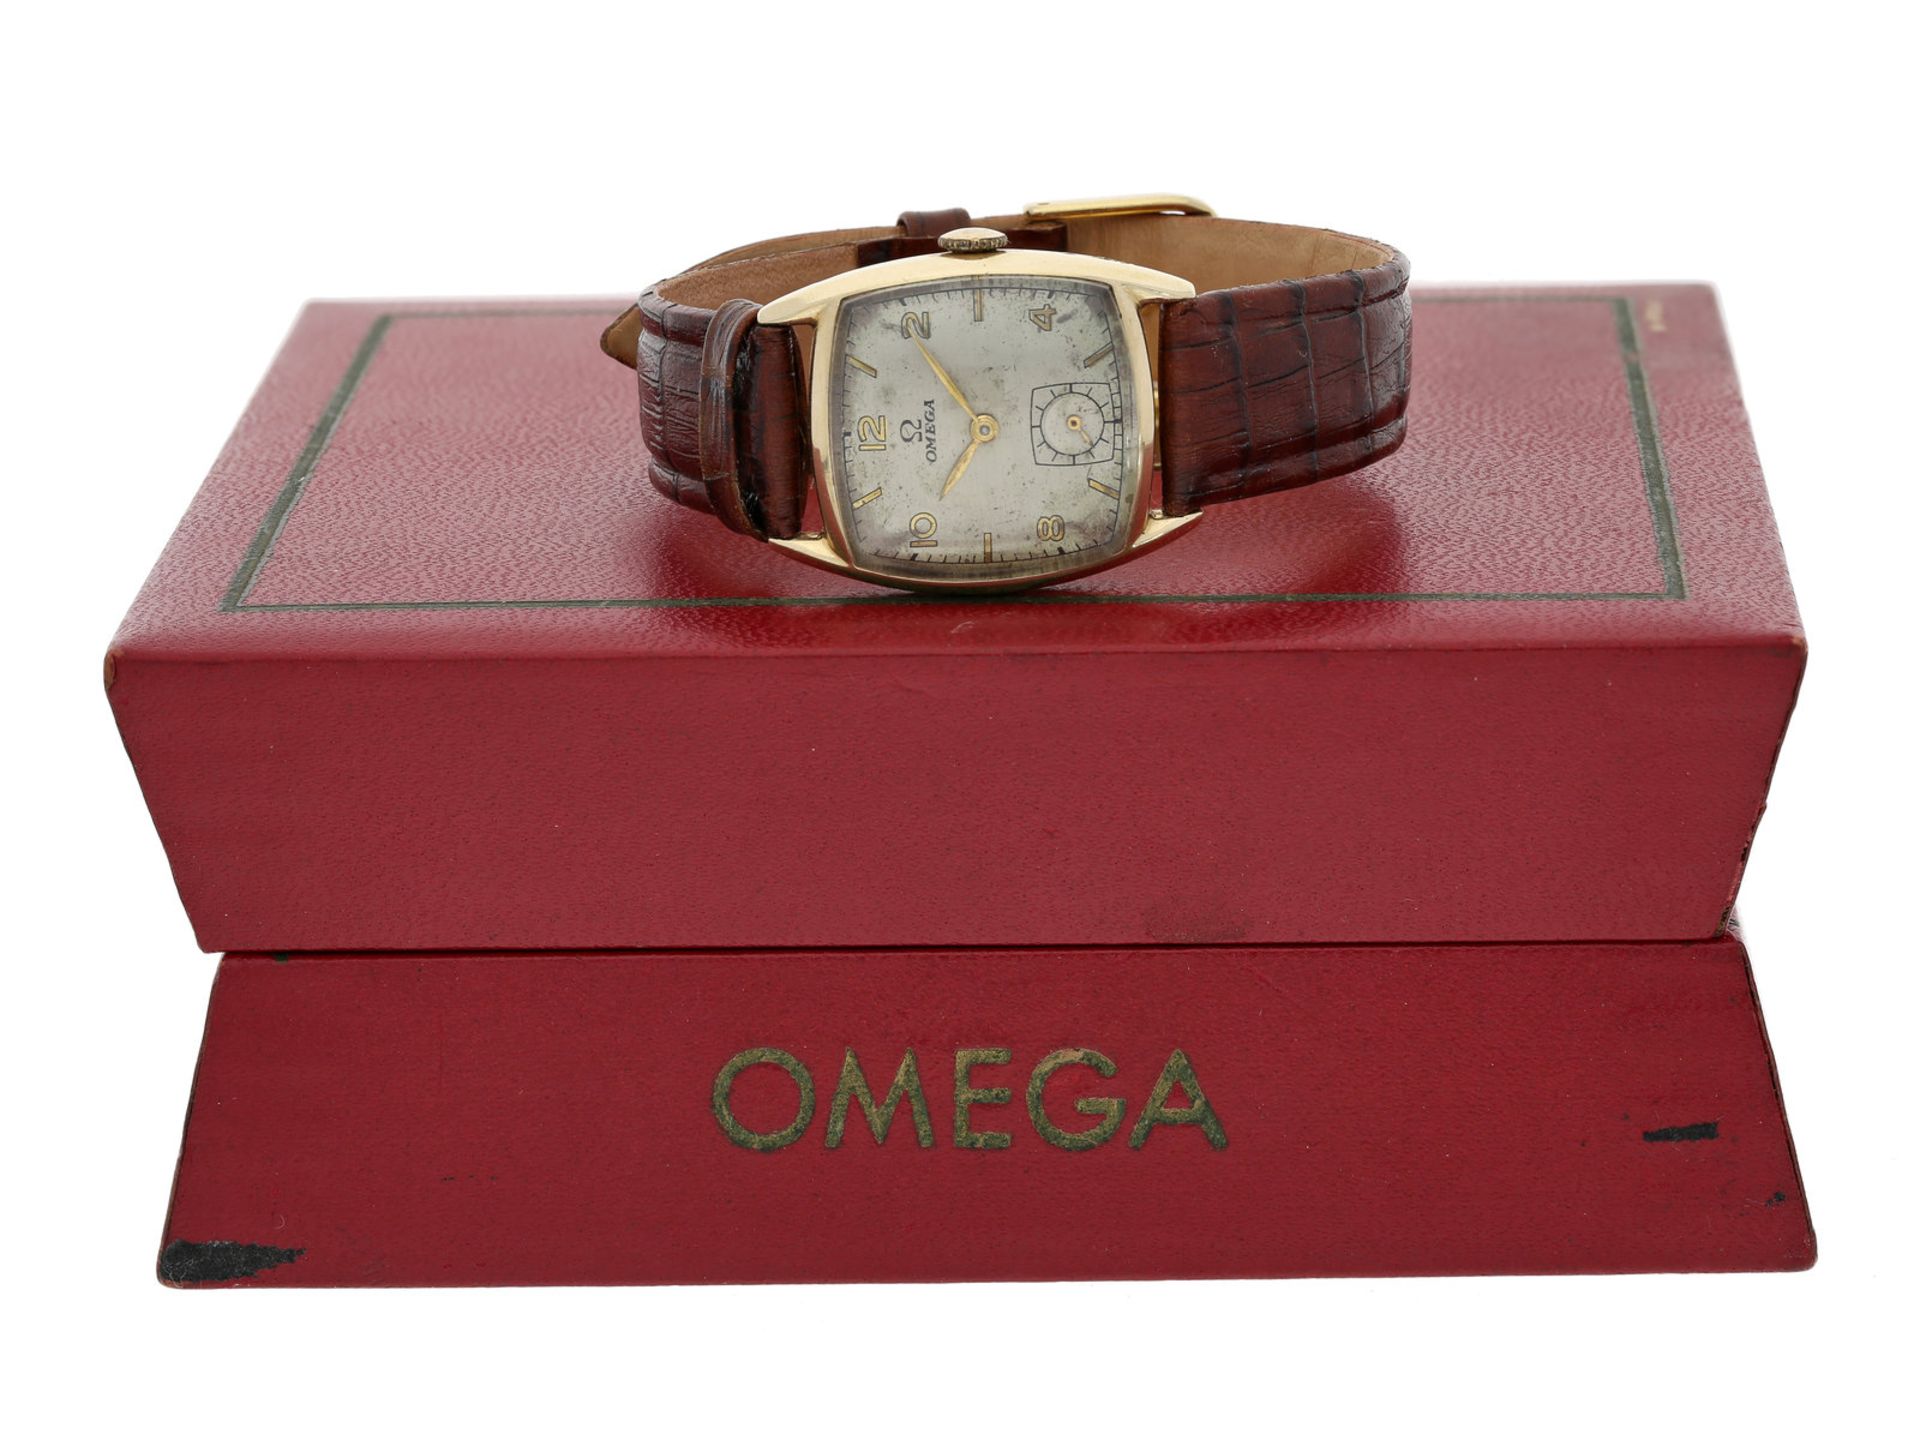 Armbanduhr: seltene vintage Herrenuhr von Omega, 14K Gold, mit OriginalboxCa. 25 x 26mm, 14K Gold,